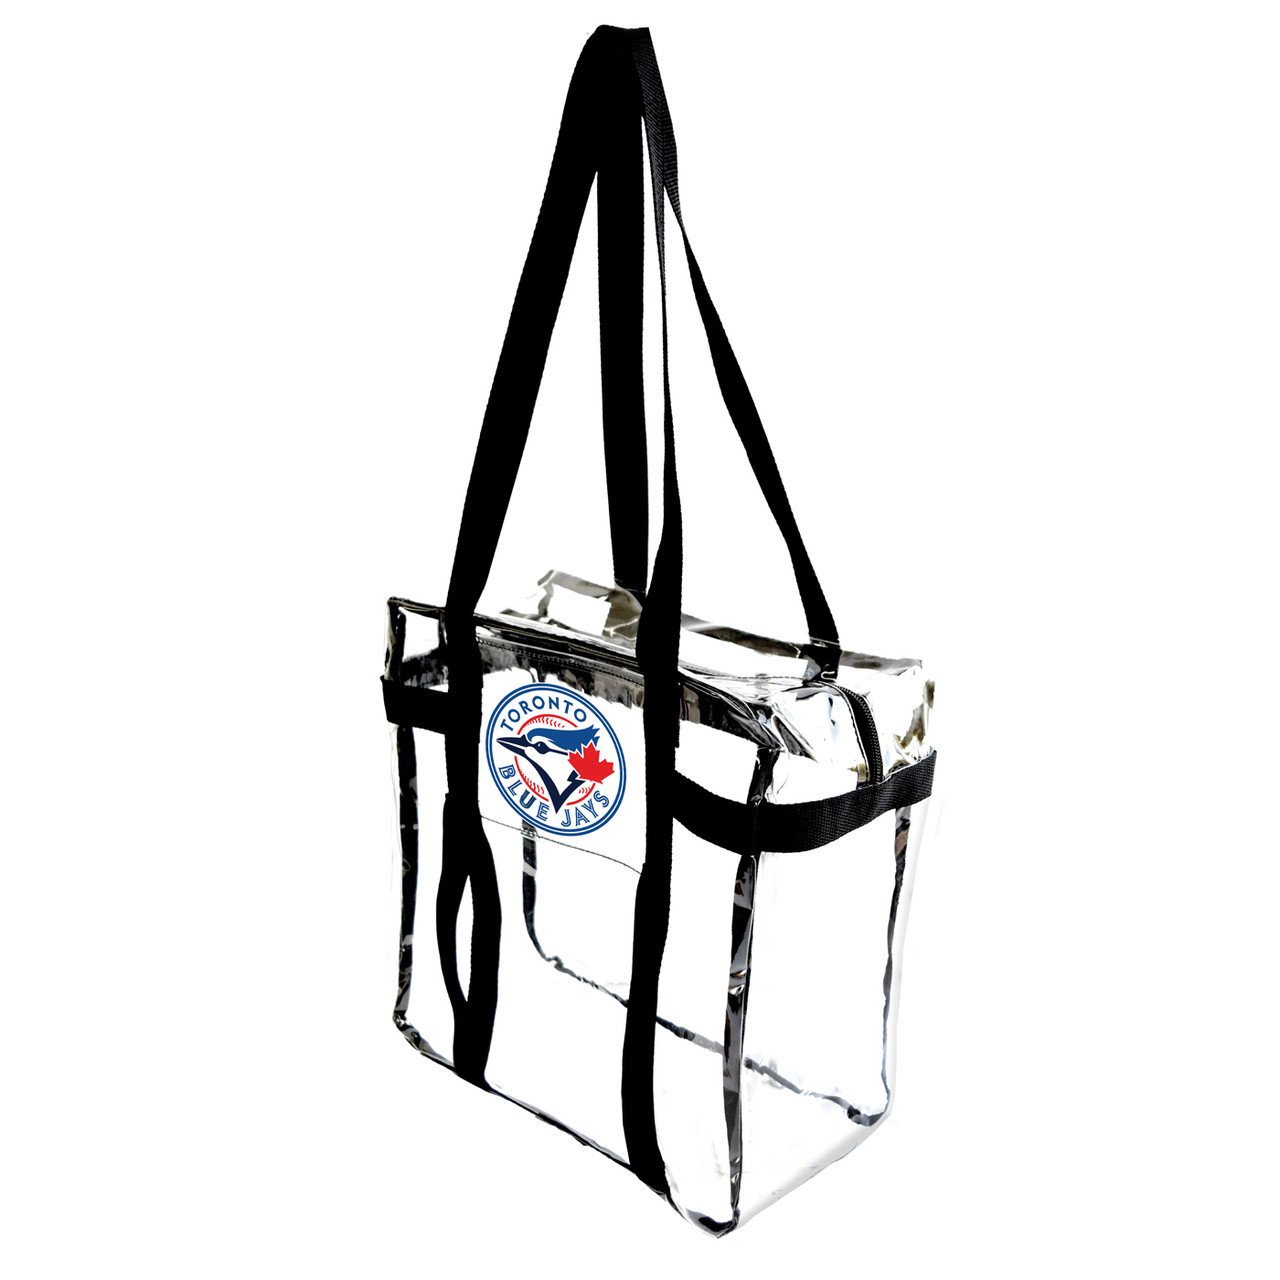 Toronto Blue Jays Merchandise, Gifts & Fan Gear - SportsUnlimited.com